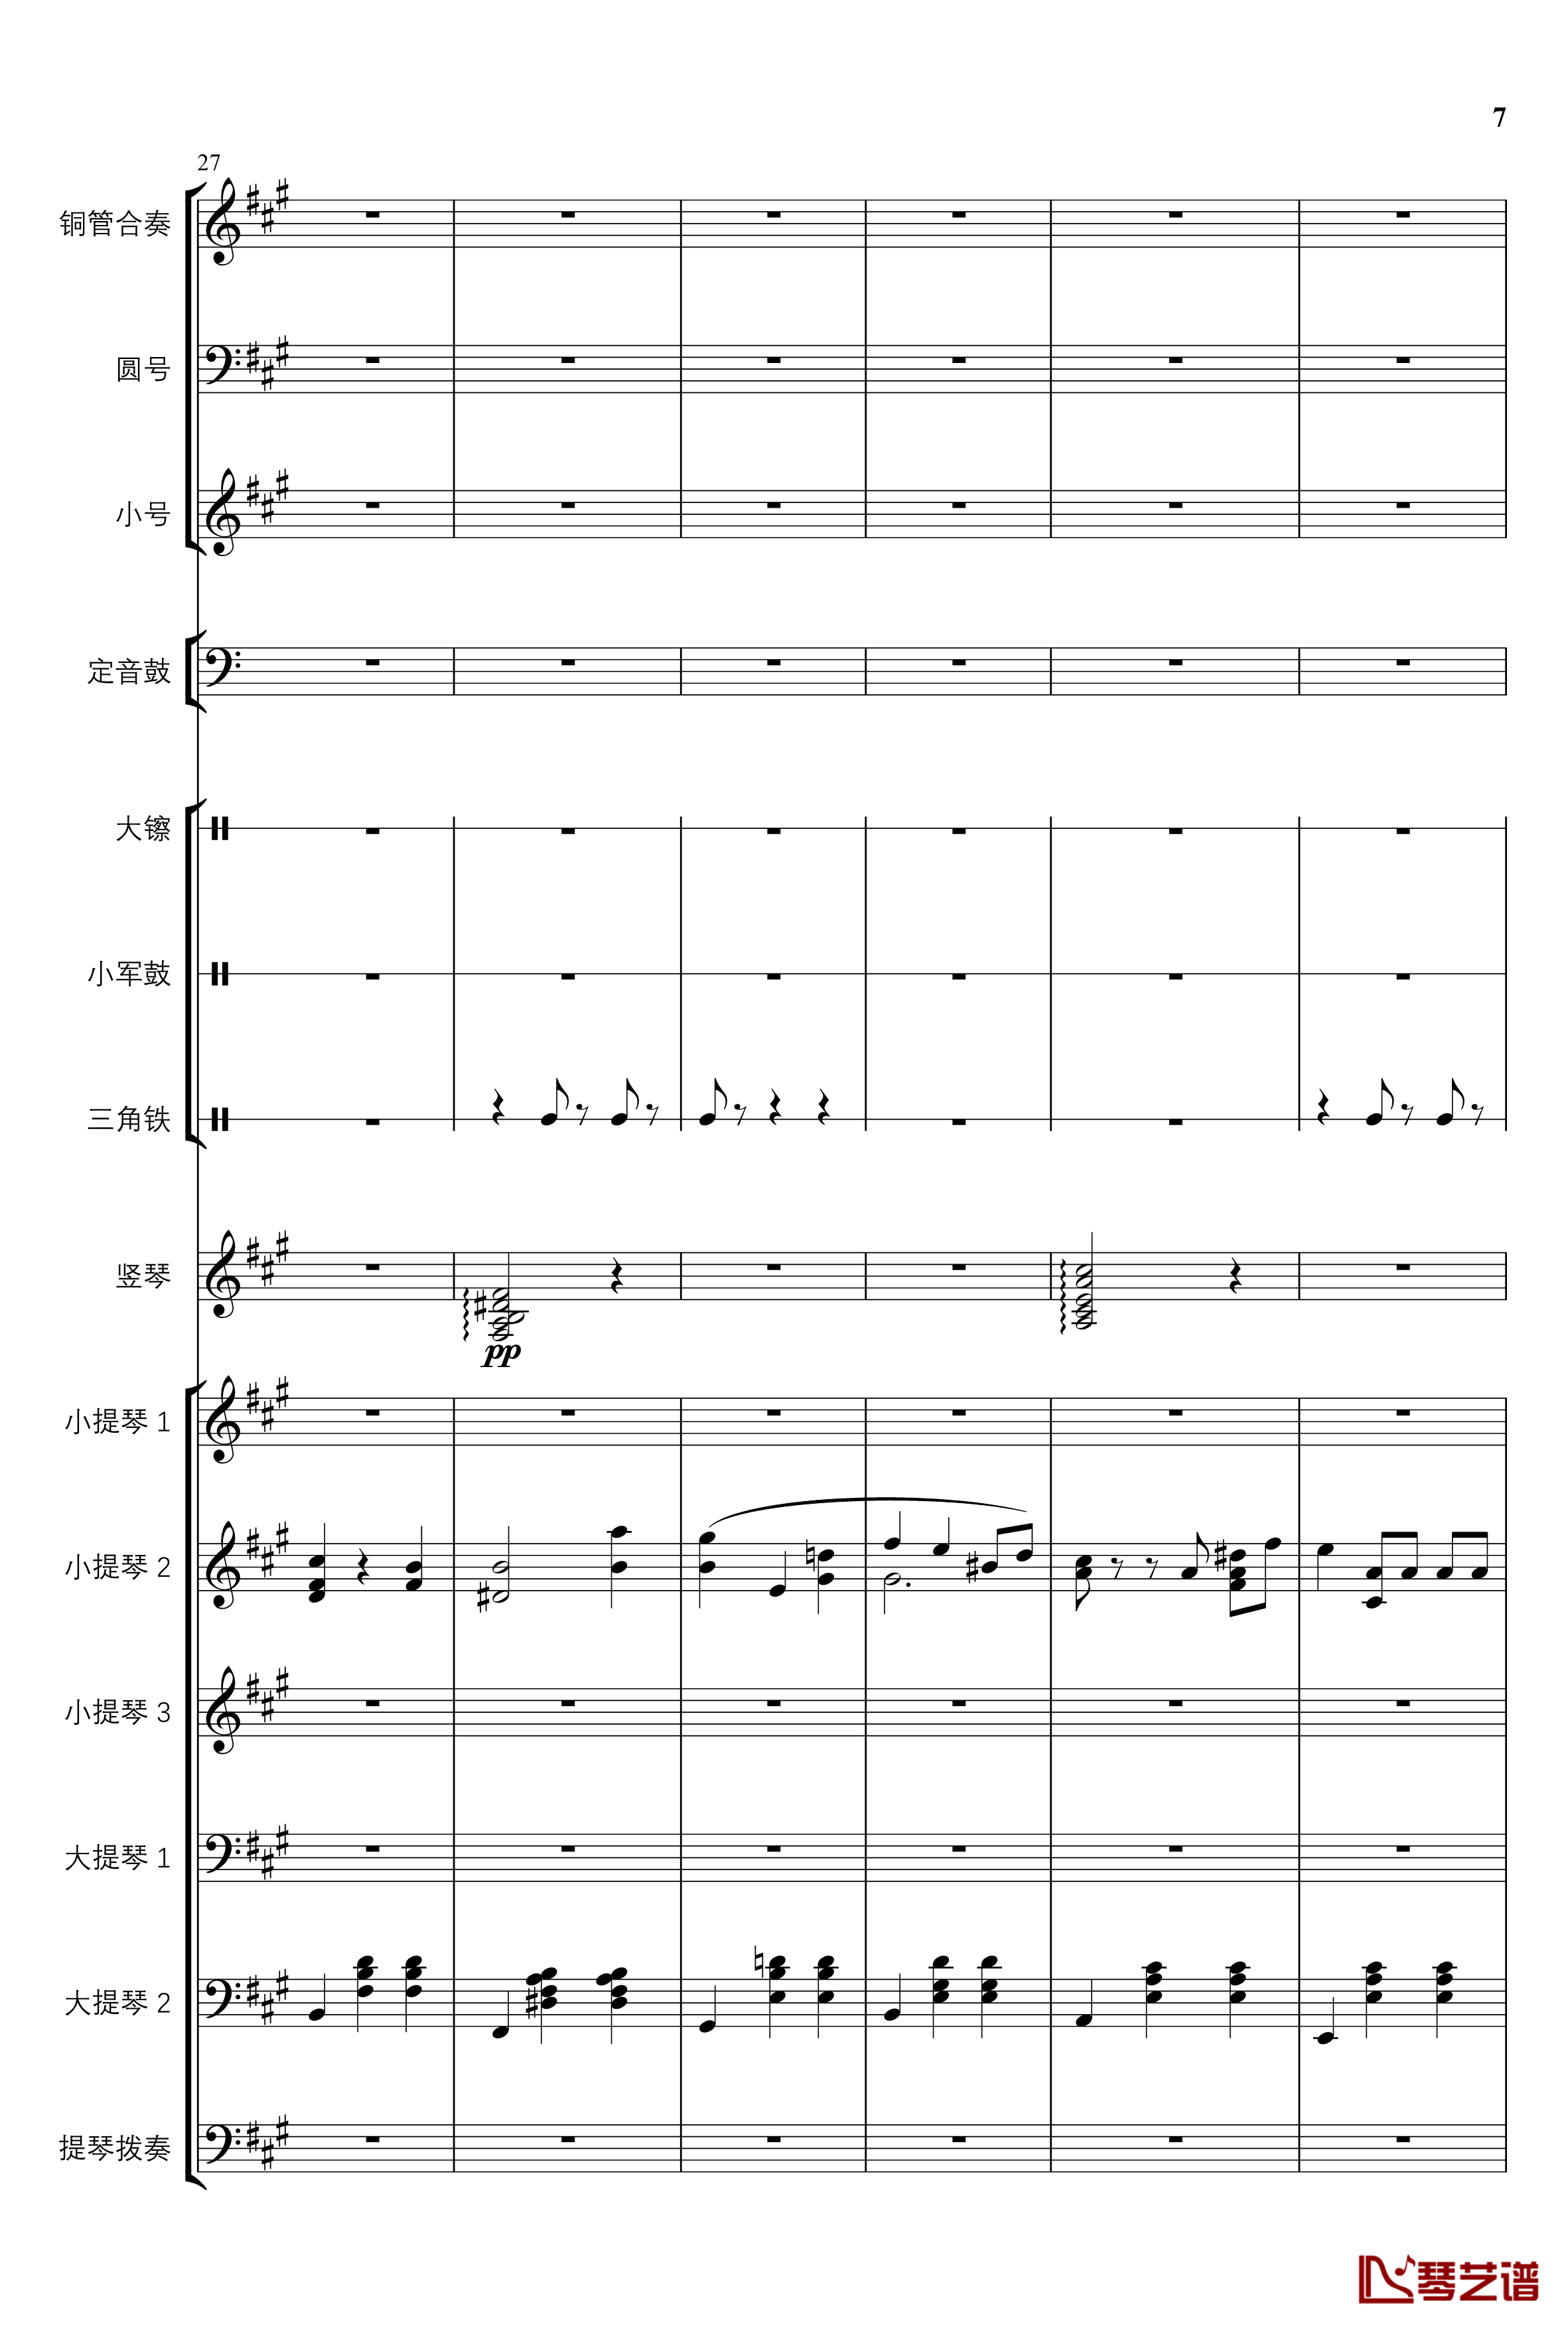 2013考试周的叙事曲钢琴谱-管弦乐重编曲版-江畔新绿7